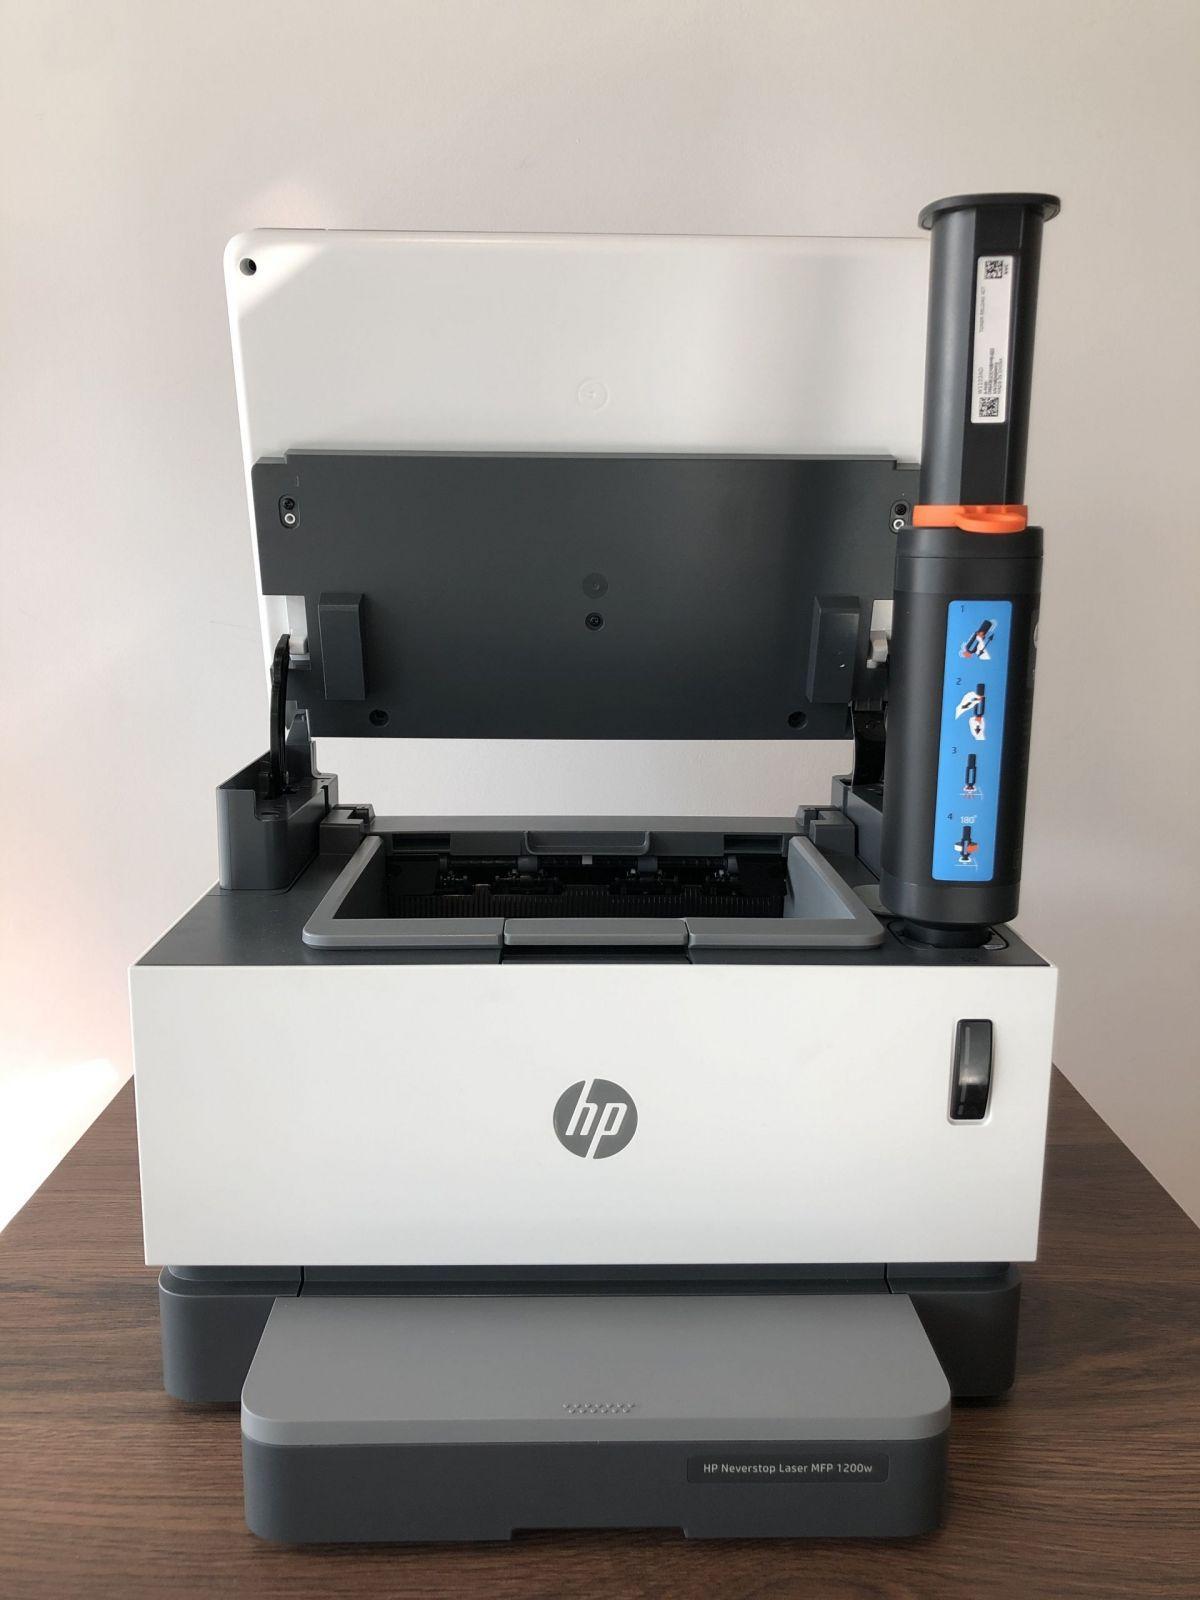 Печать без картриджа. Обзор МФУ HP Neverstop Laser 1200w (img 3117 scaled)